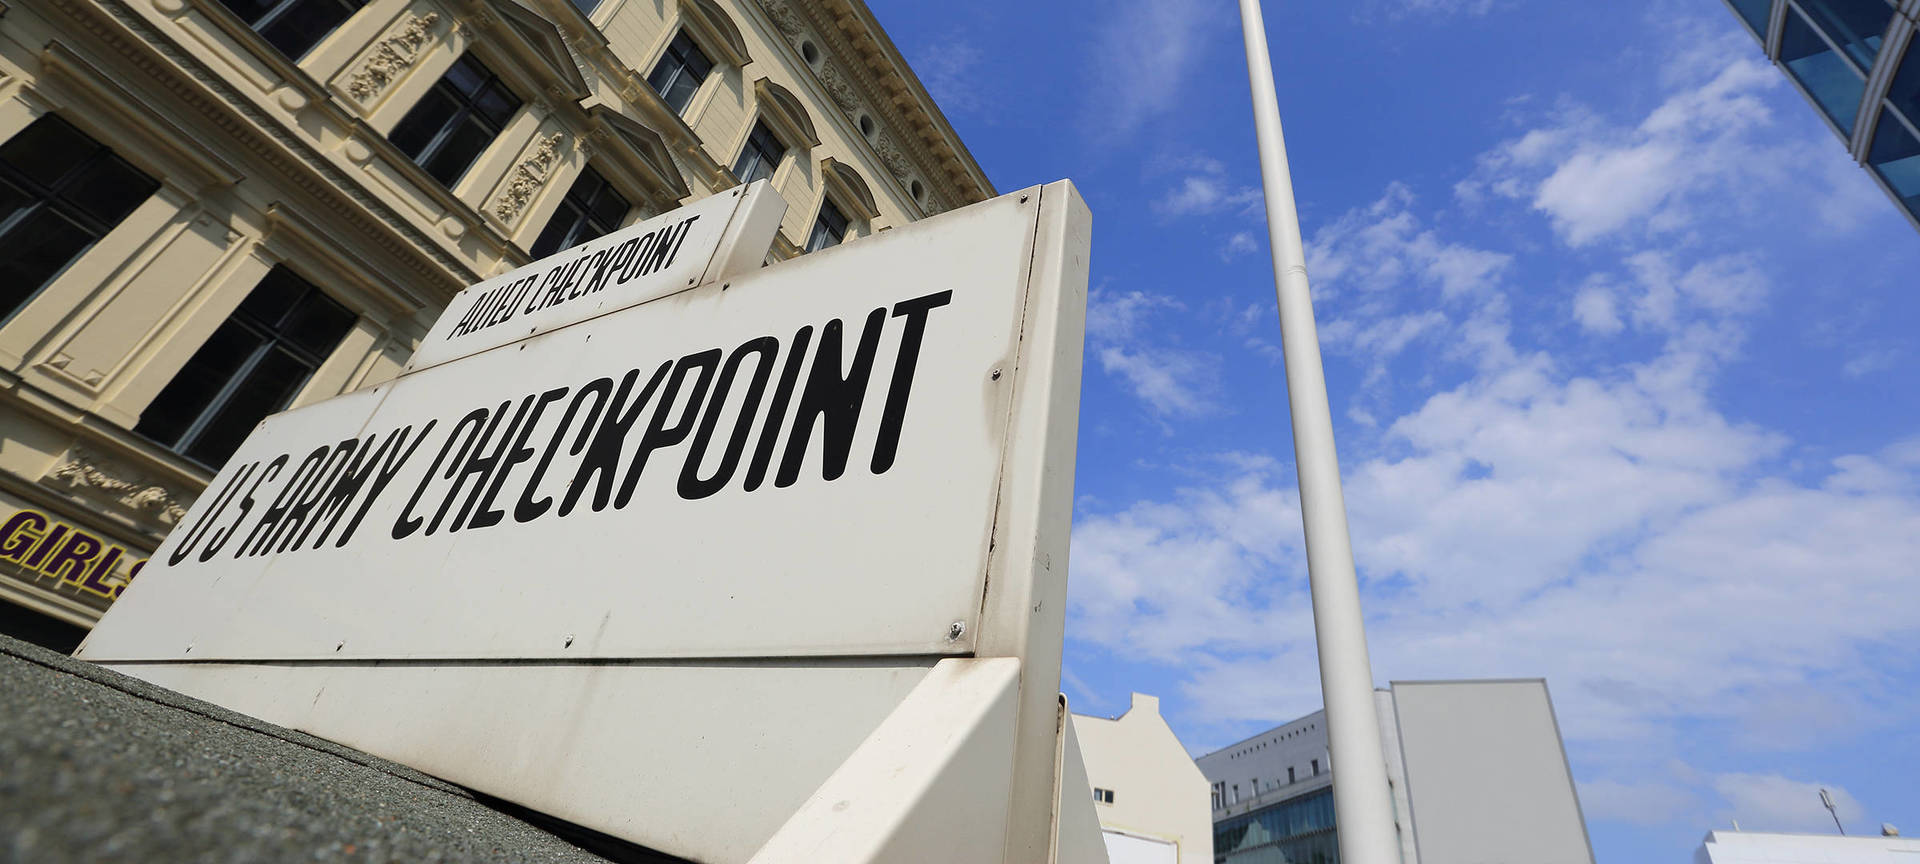 Checkpoint Charlie – Berlins berühmtester Grenzübergang - H-Hotels.com